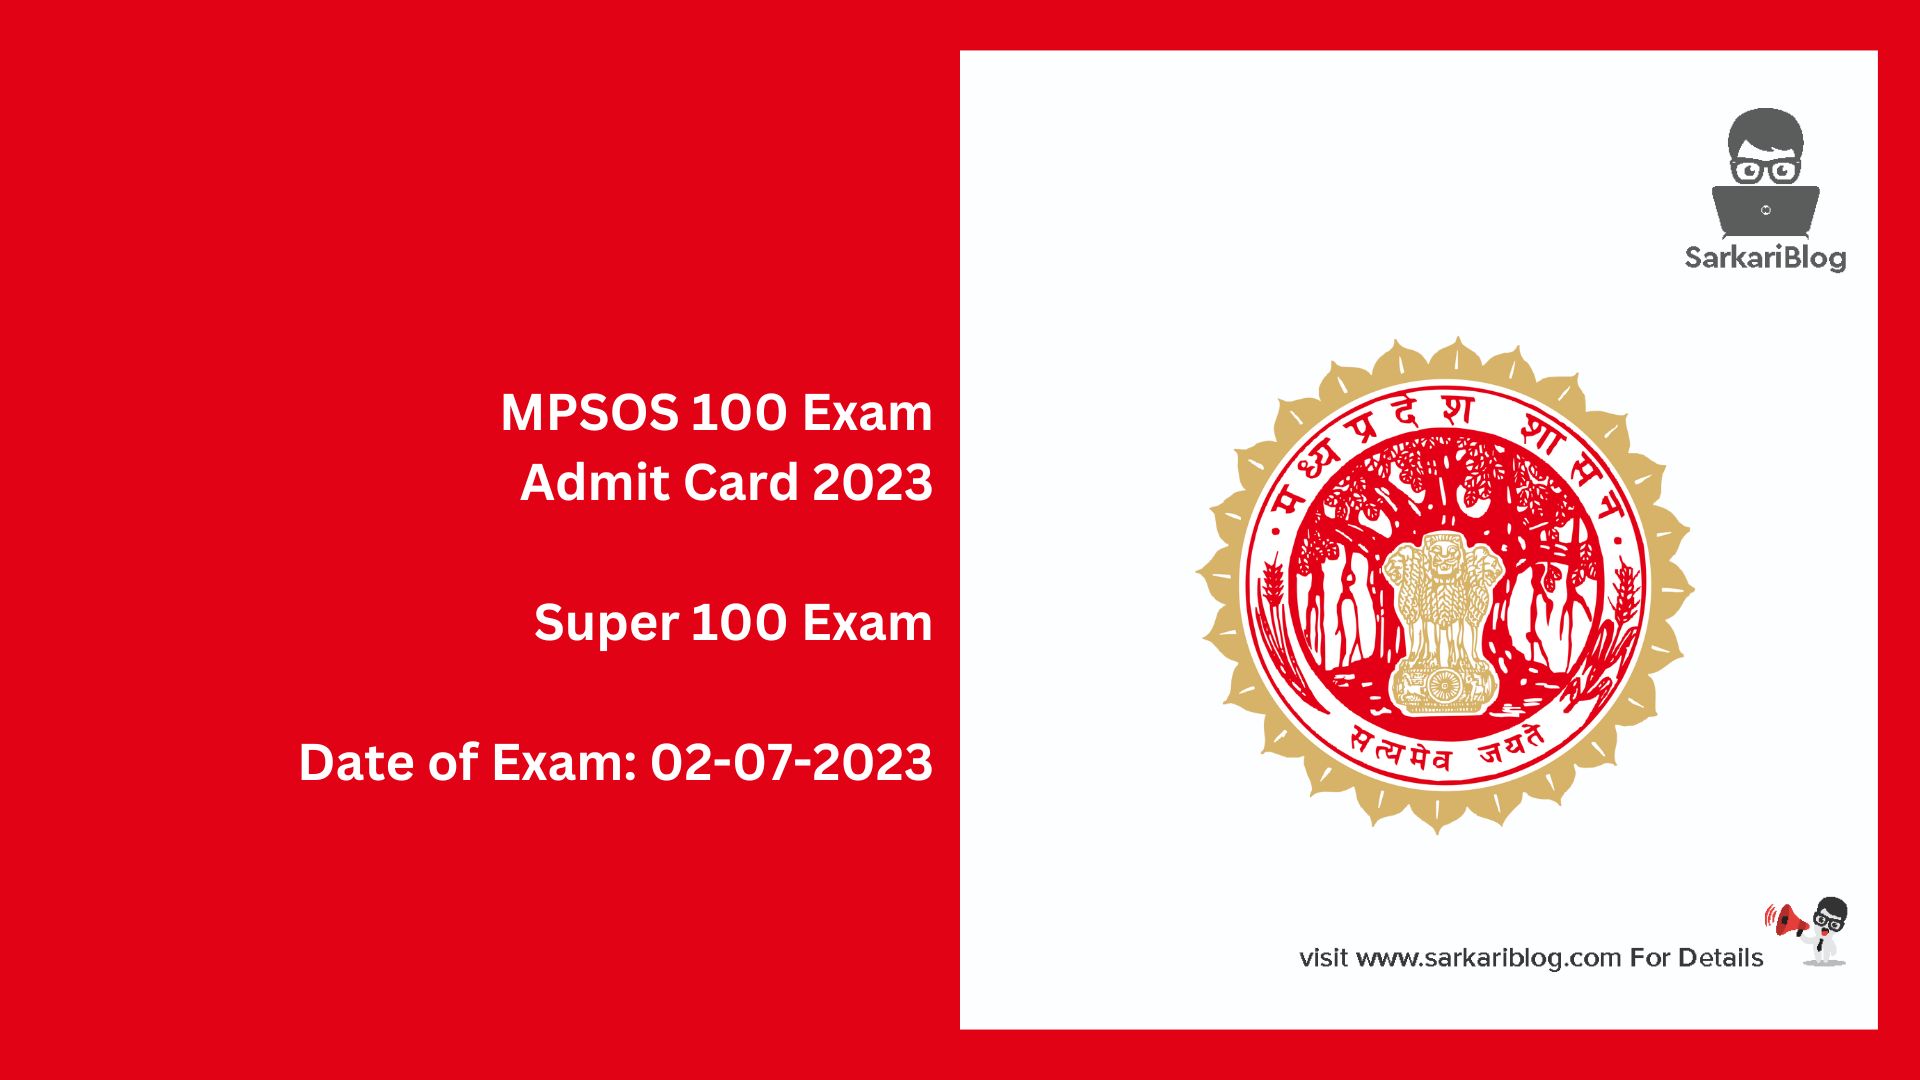 MPSOS 100 Exam Admit Card 2023